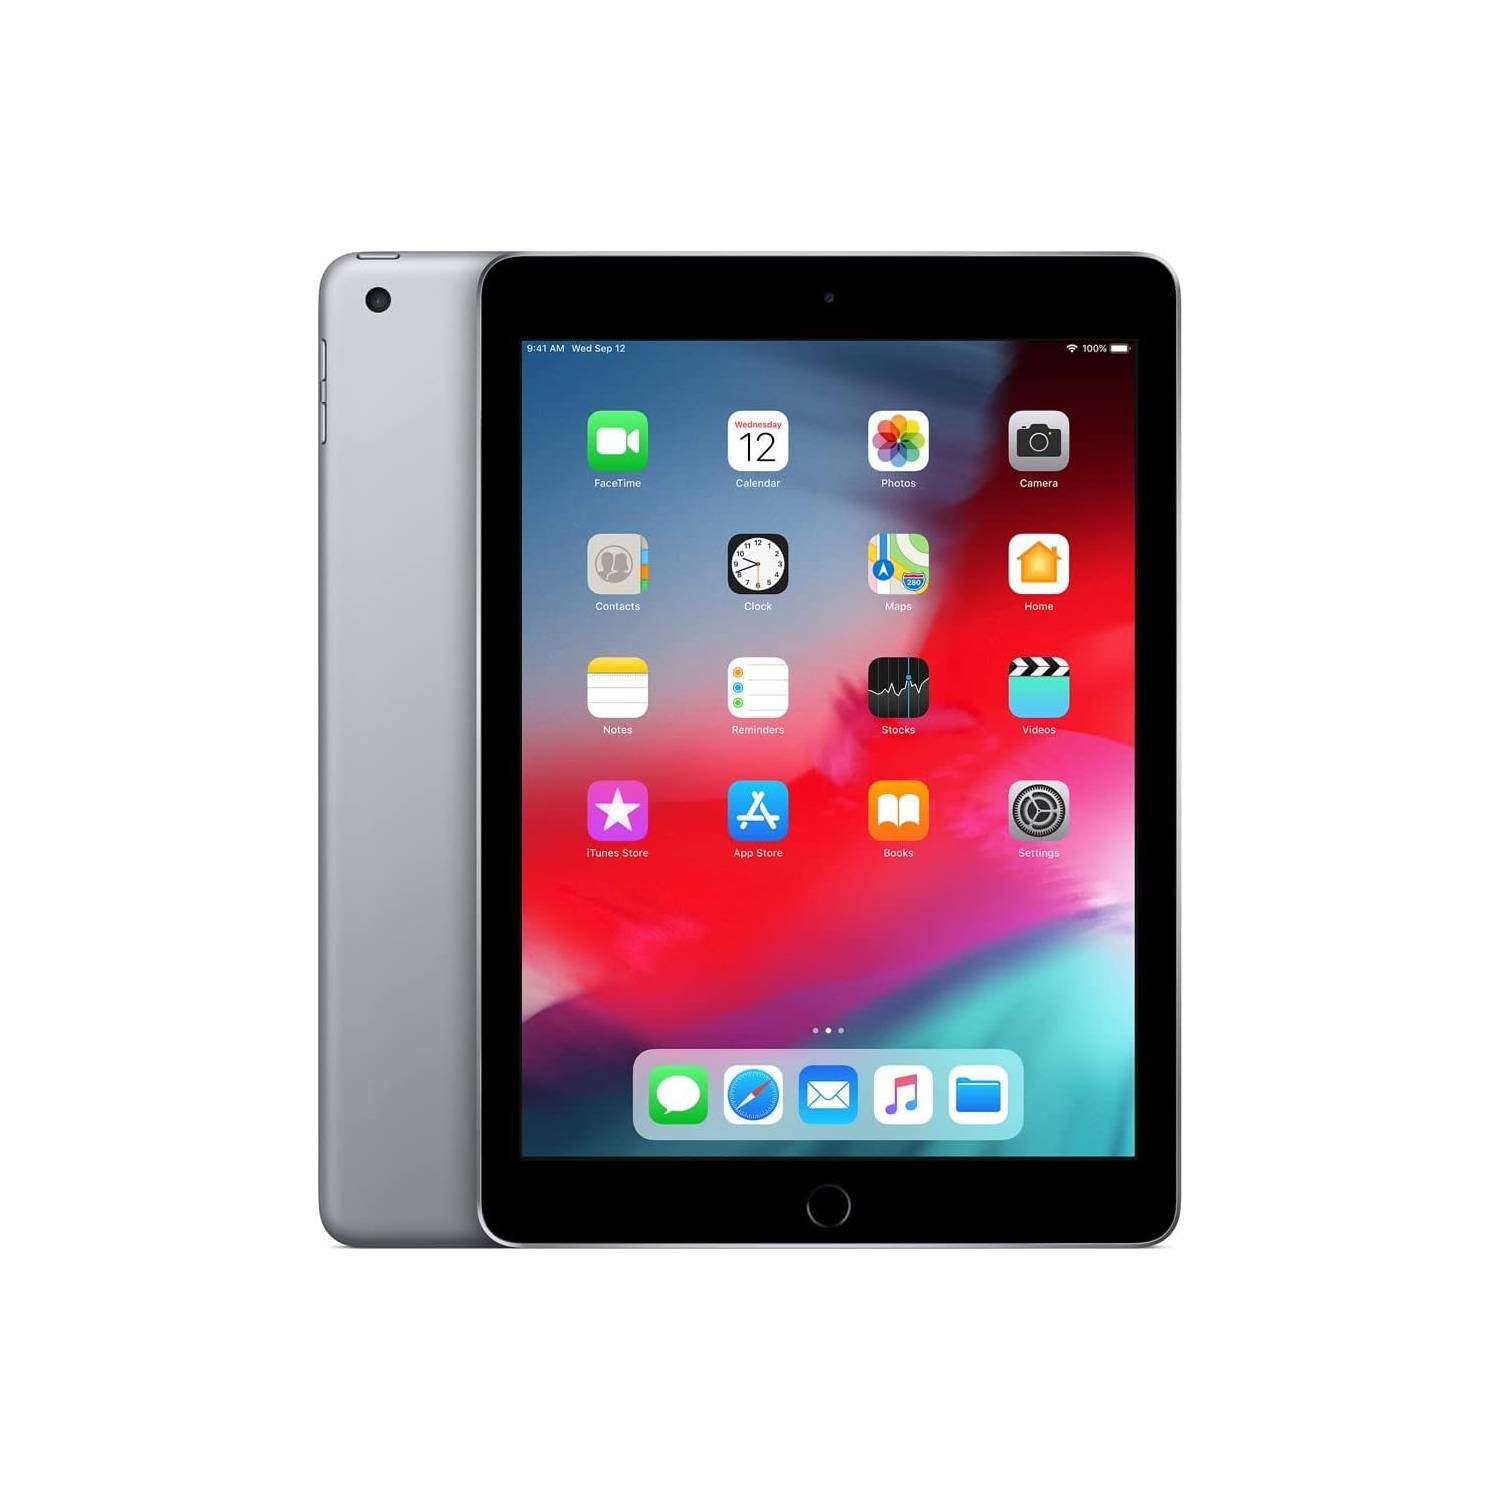 APPLE Apple iPad Pro 1 32 GB Silver Wifi 2016 MLMP2LL/A